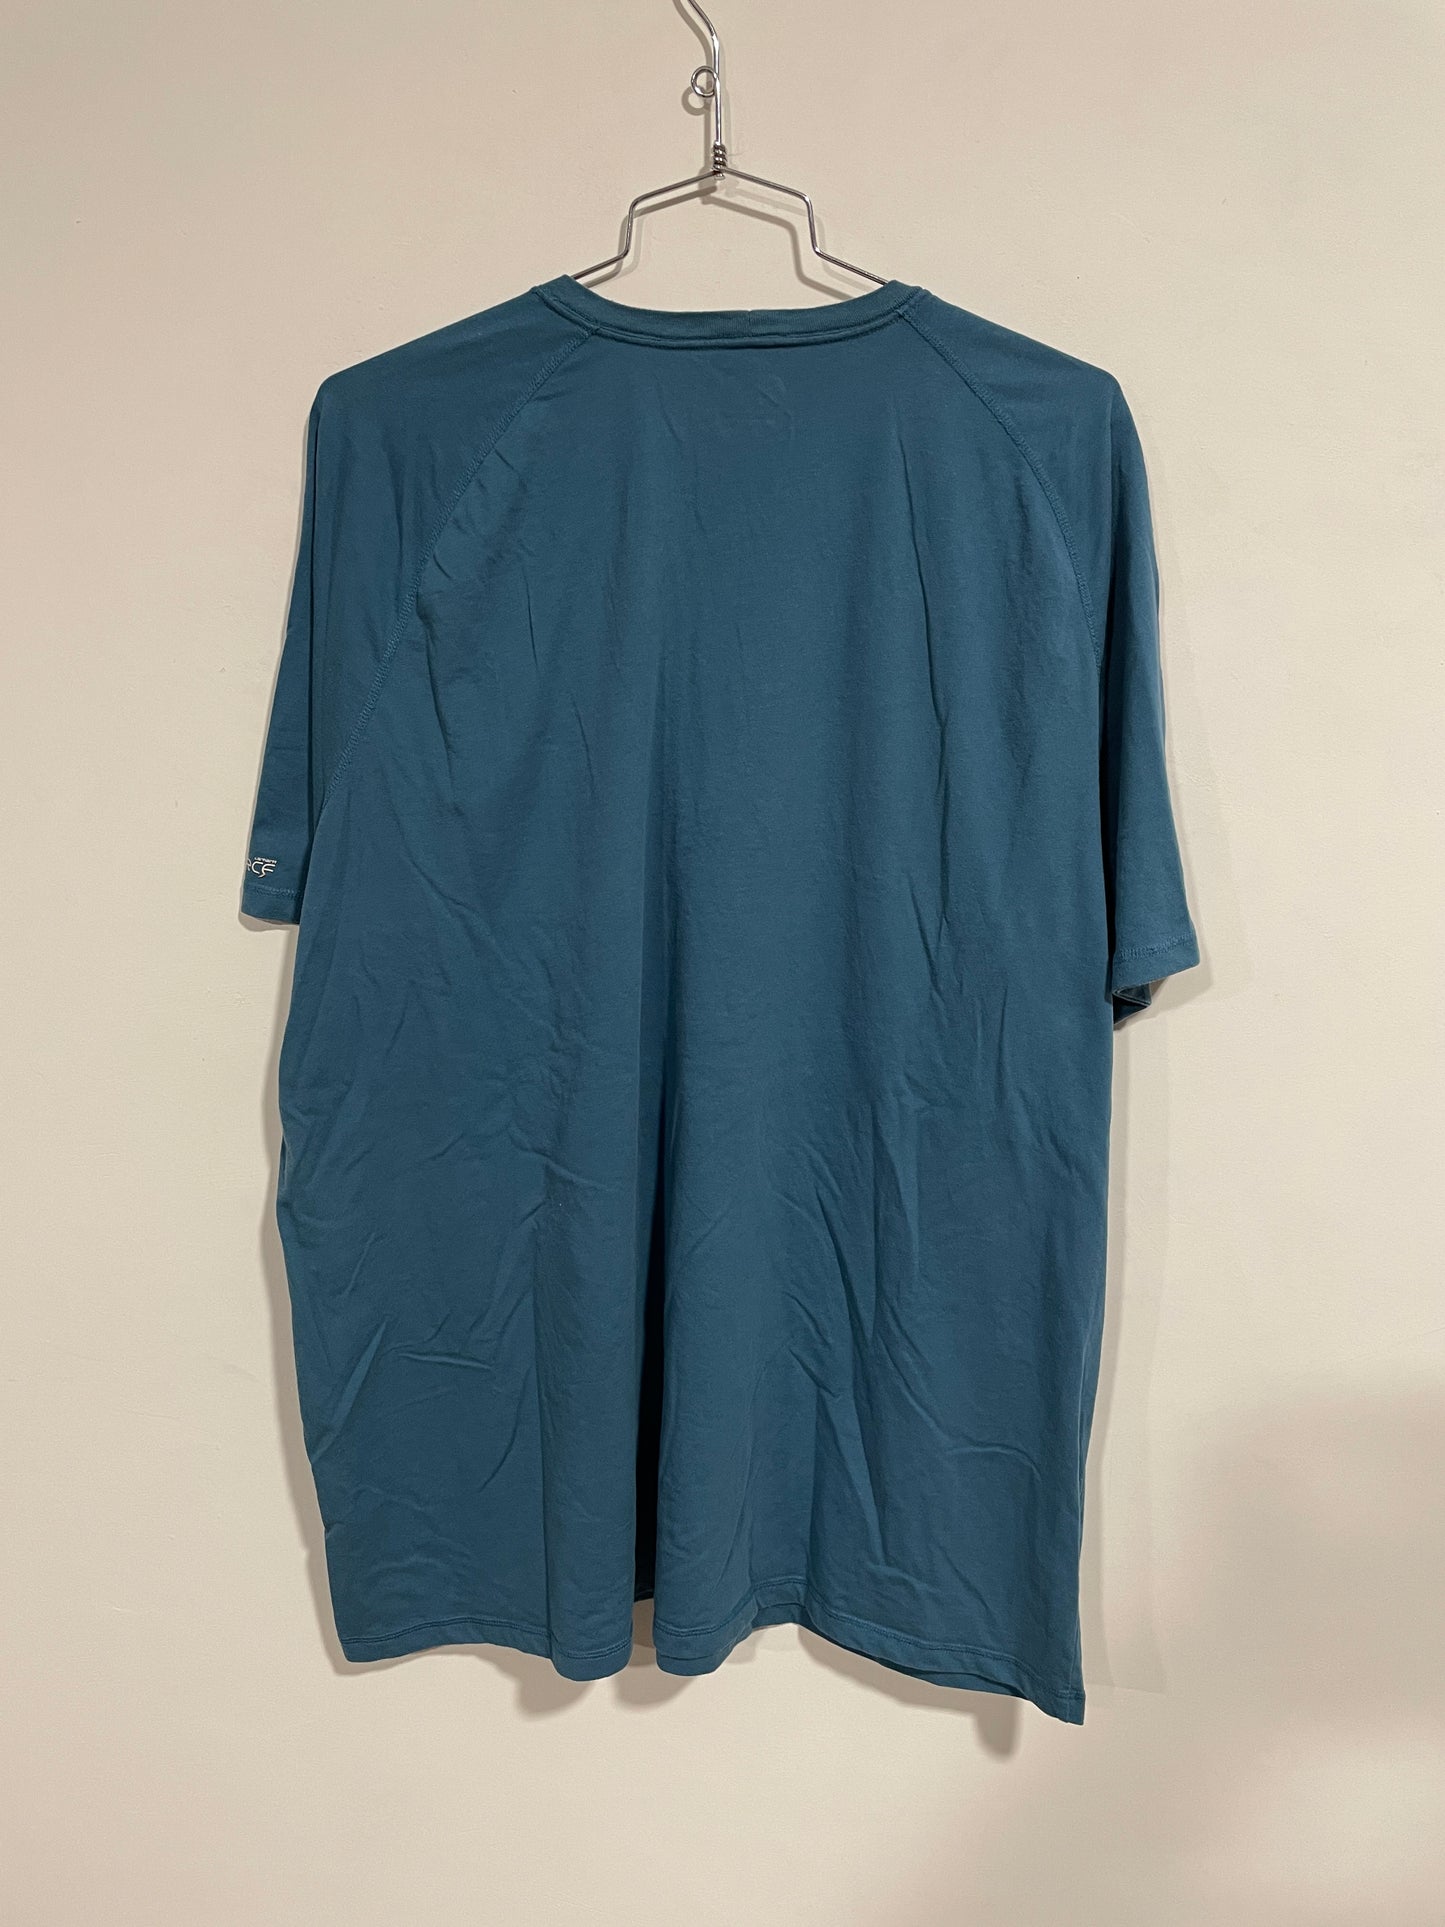 T shirt Carhartt USA (MR031)